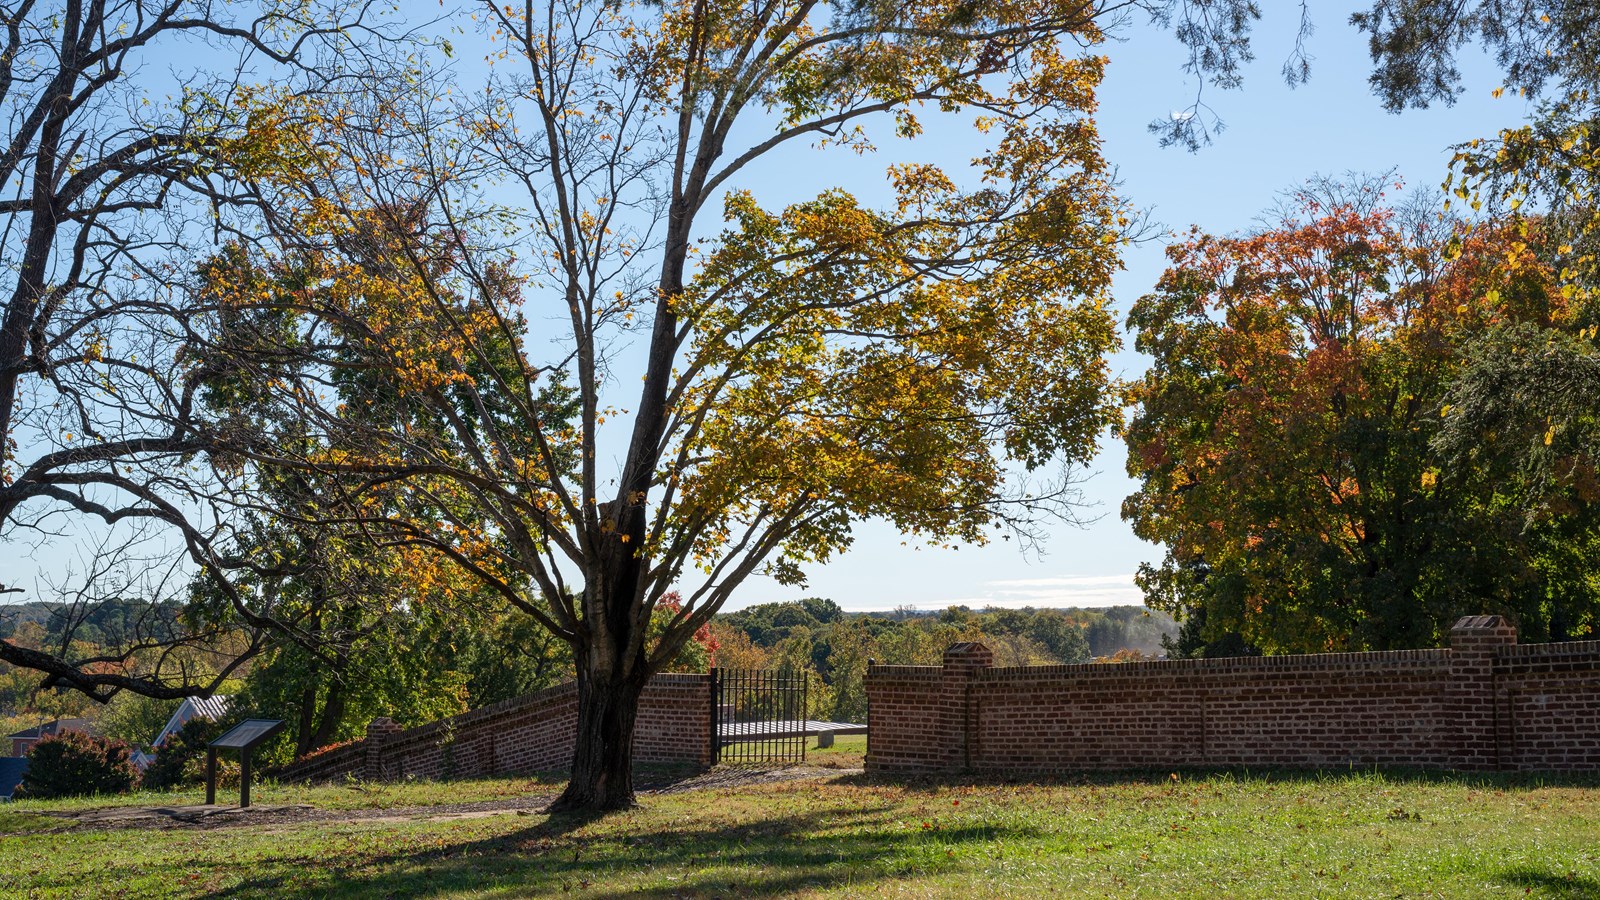 Fall scene of a brick wall across a field.